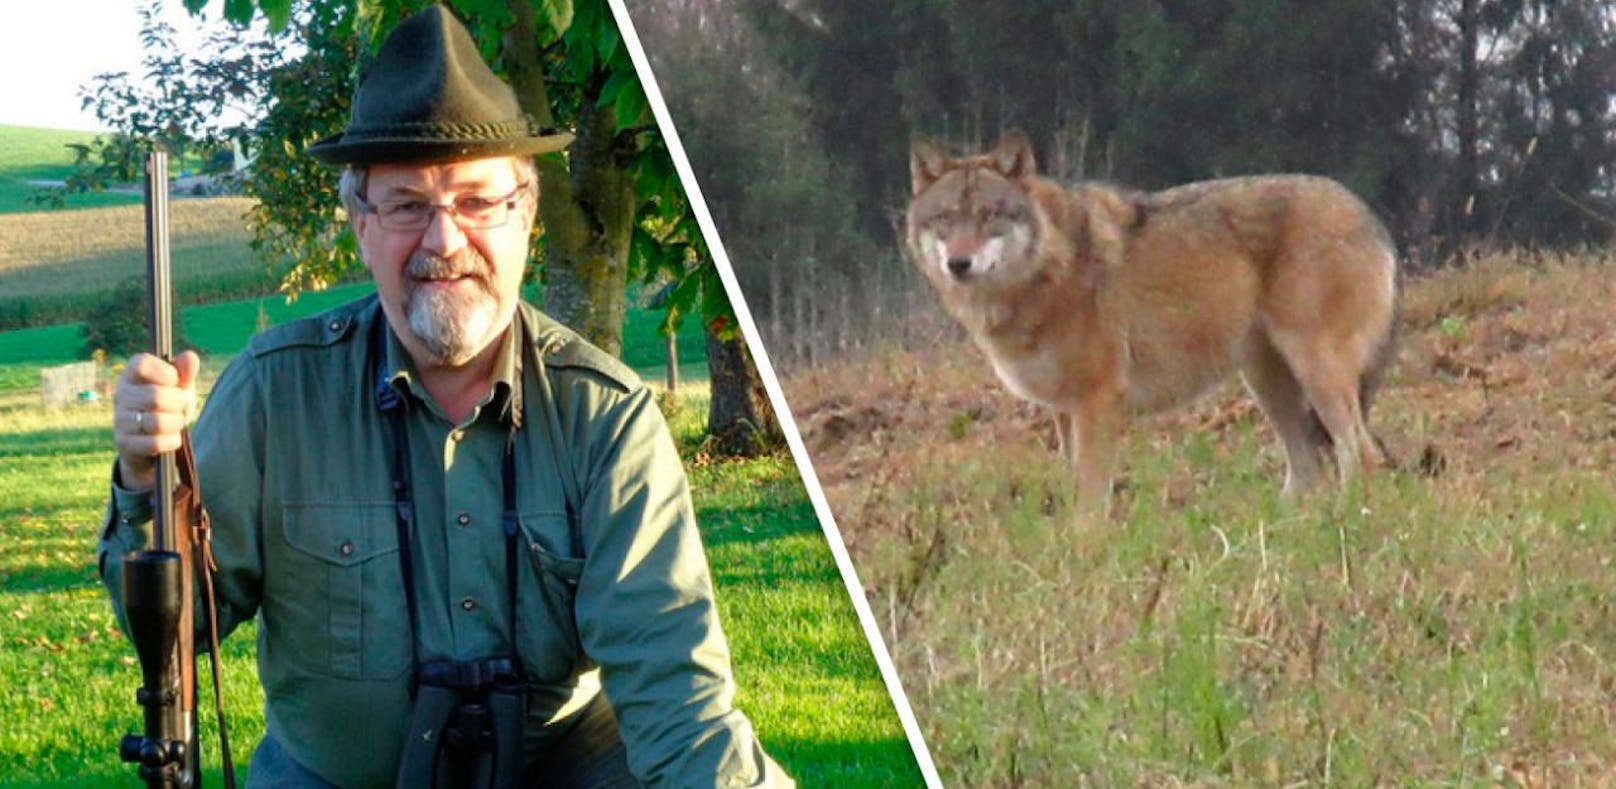 Hahn gerissen: Wolf mit Mistgabel von Hof verjagt